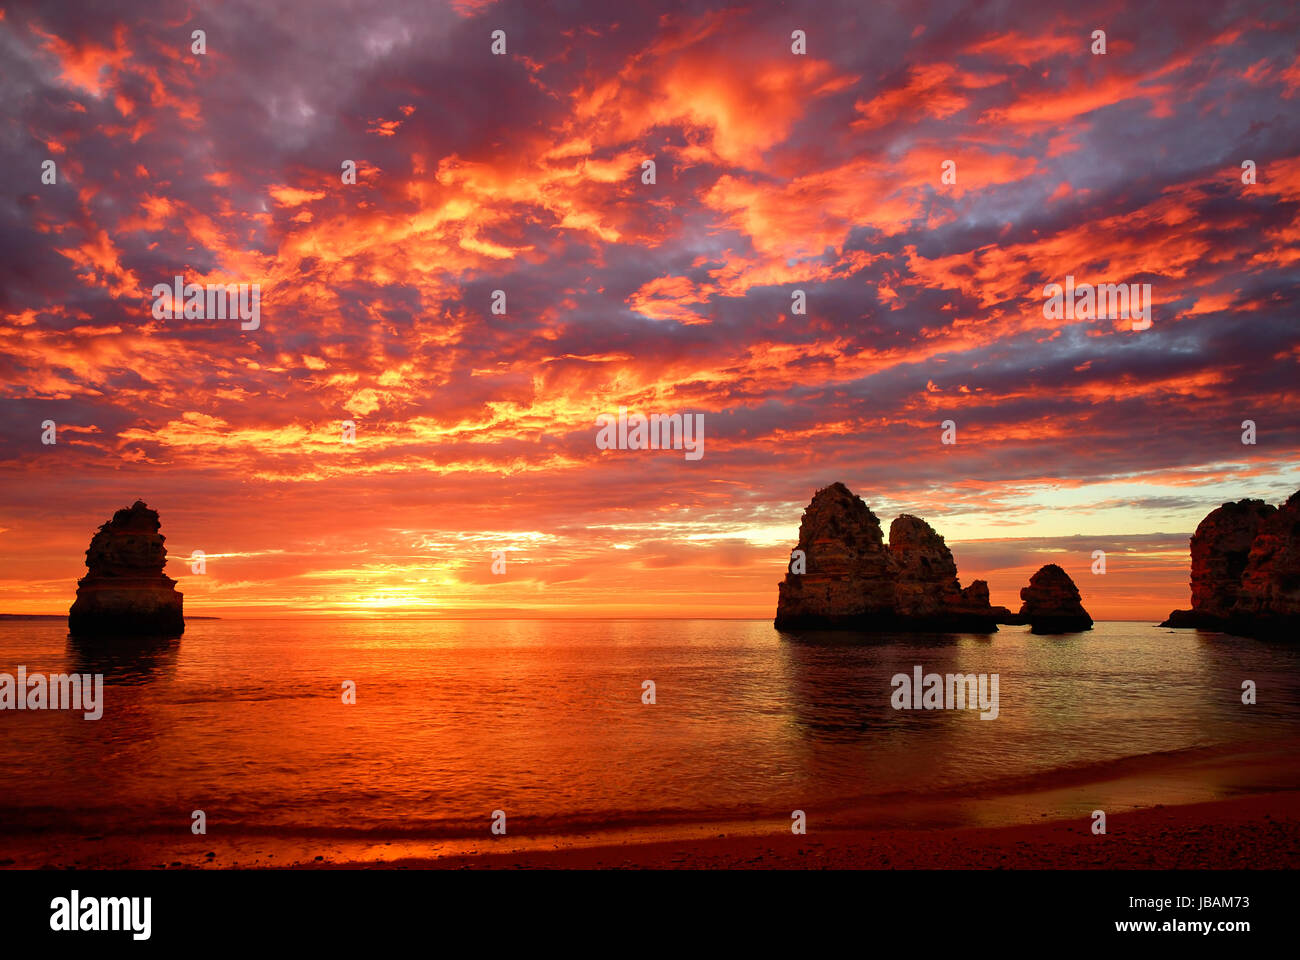 Sonnenaufgang mit intensiven Farben am Meer, mit Felsen und roten Wolken Stock Photo